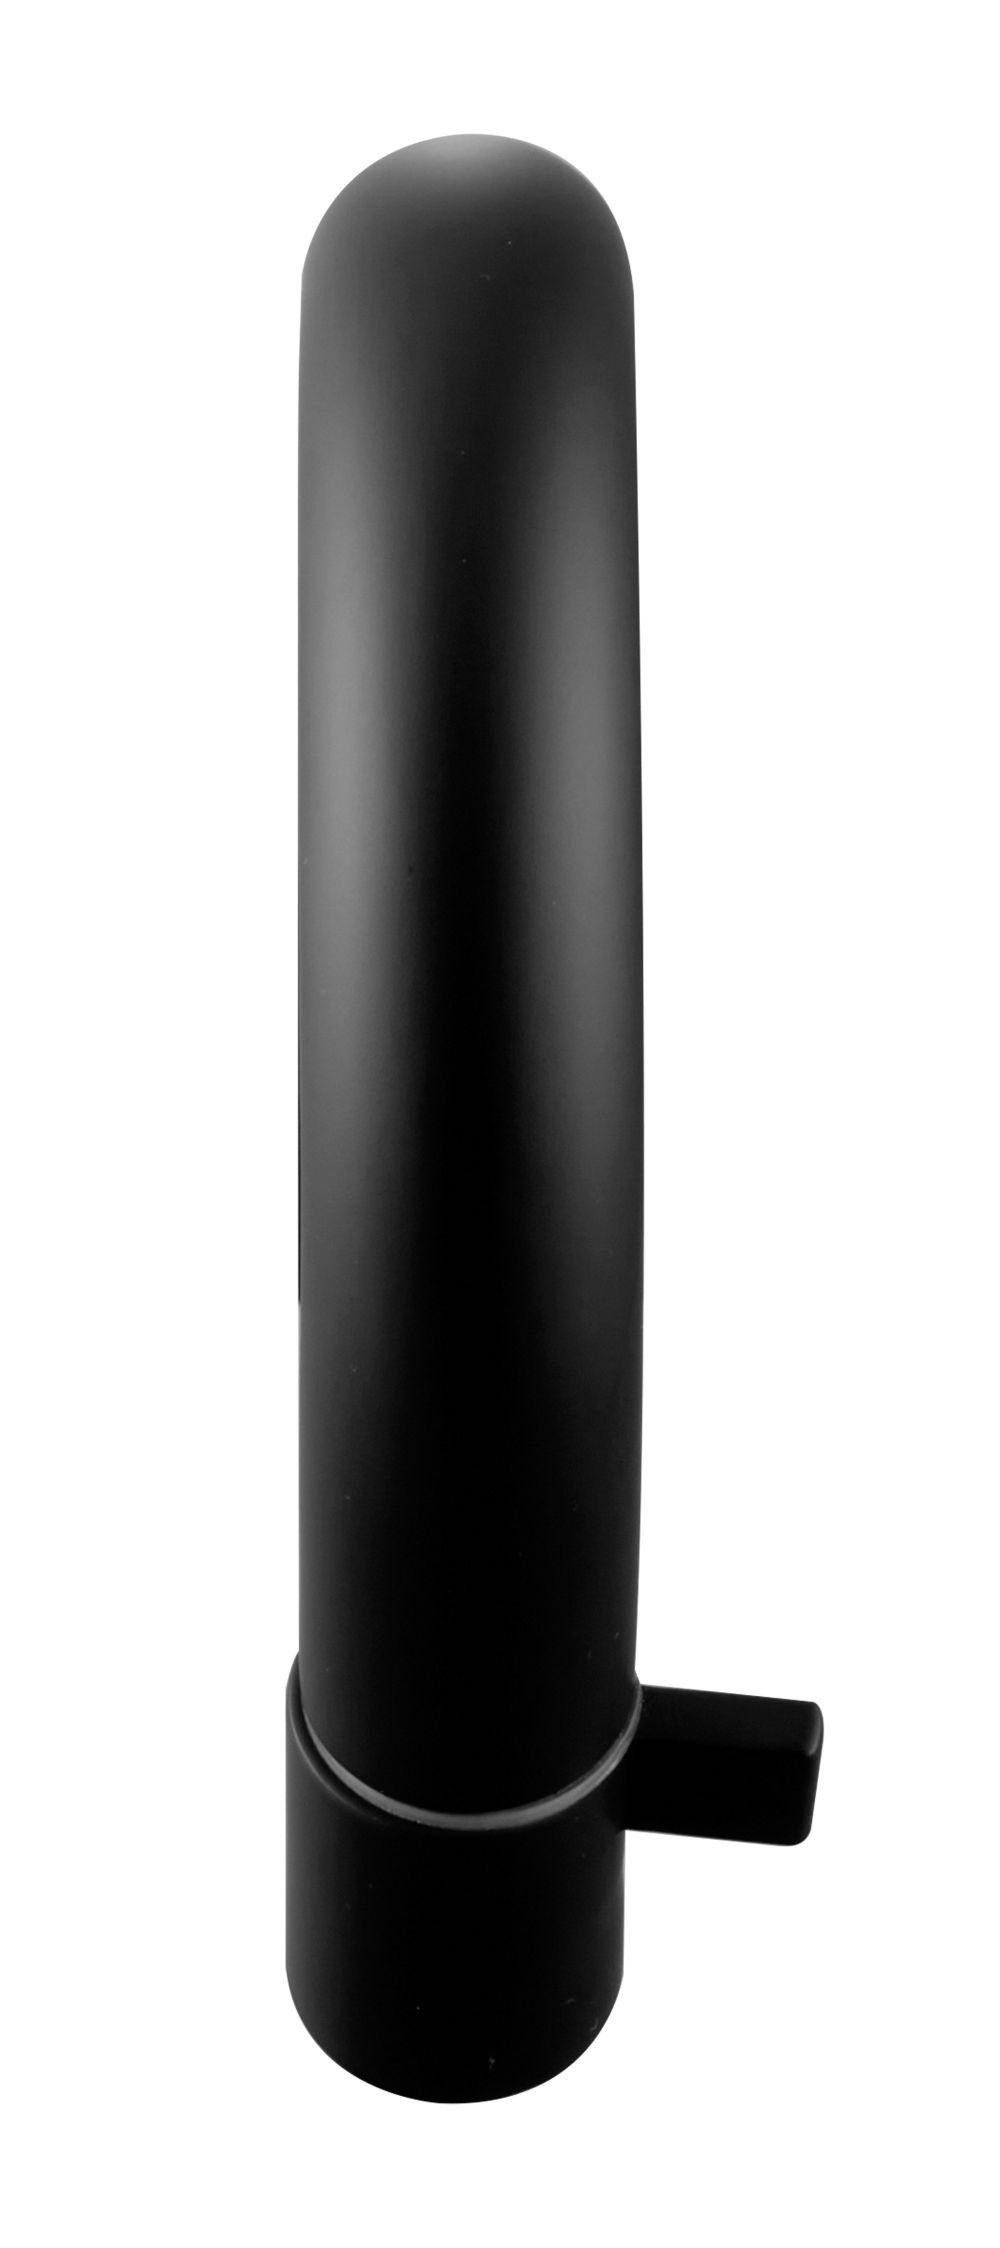 Tuganna Waschtischarmatur MLB Kaltwasser-Standventil mit Kopfsteuerung Badarmatur matt schwarz